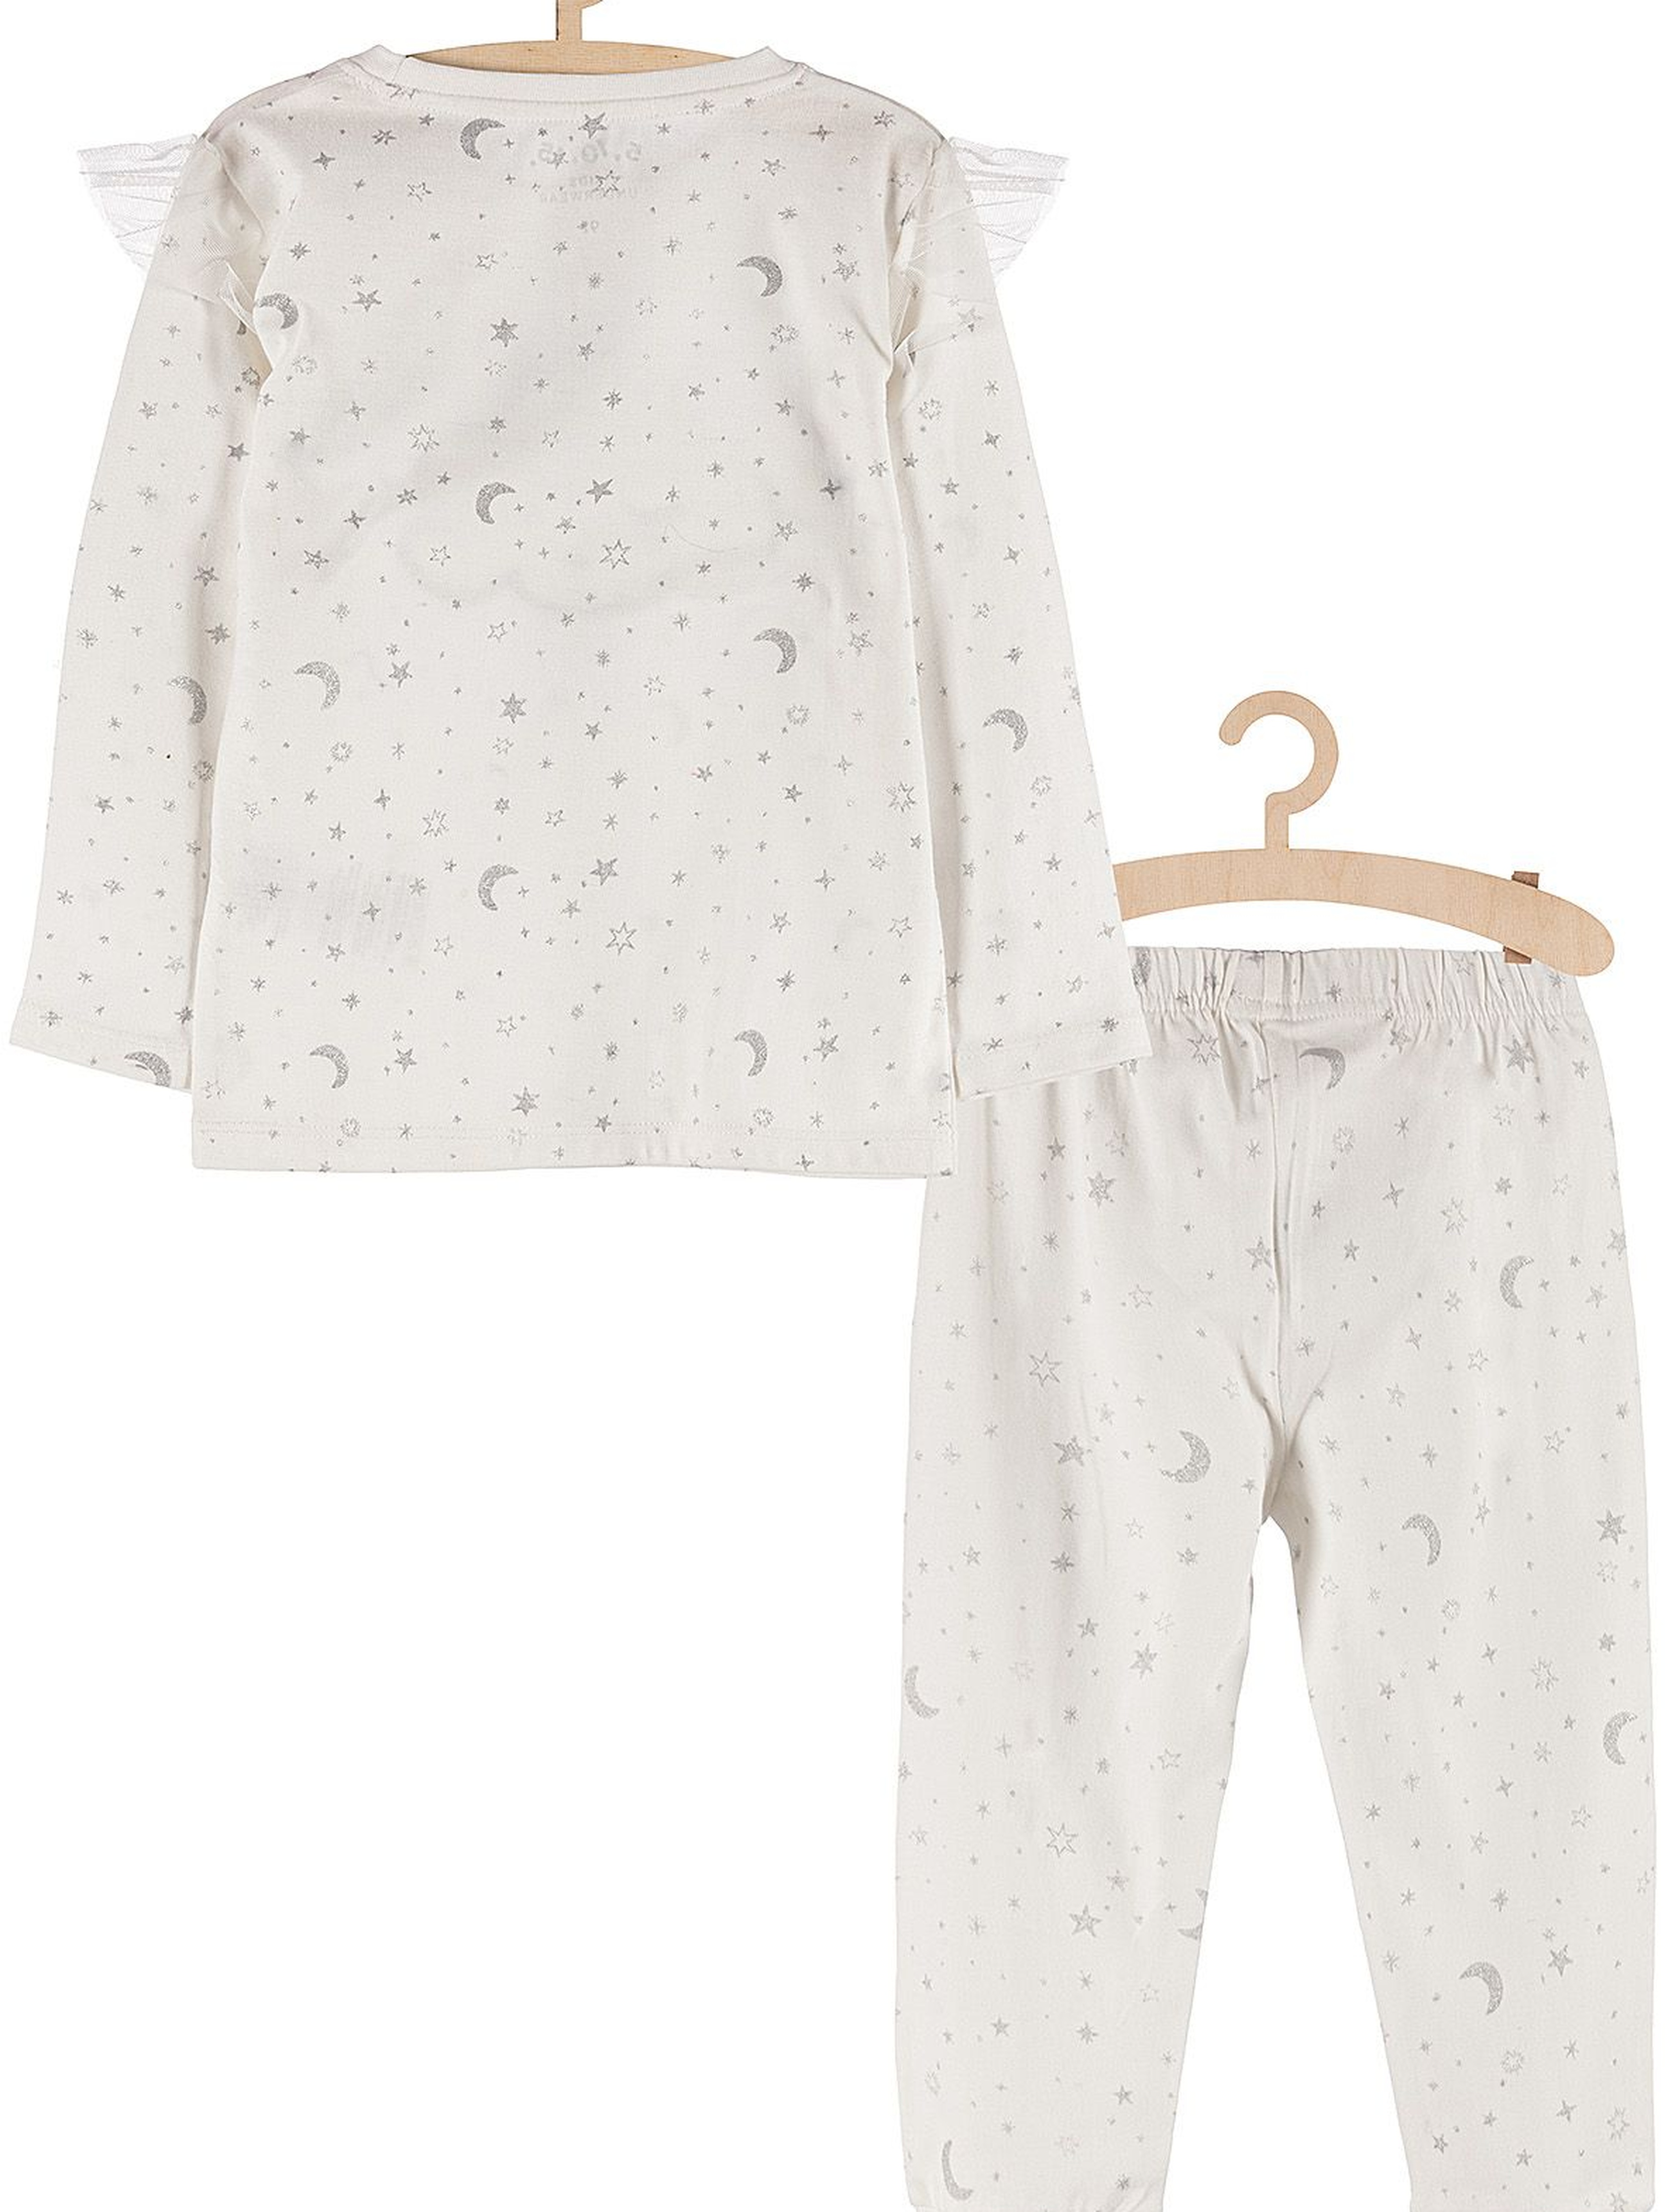 Piżamka dla dziewczynki- biała w srebrne gwiazdki